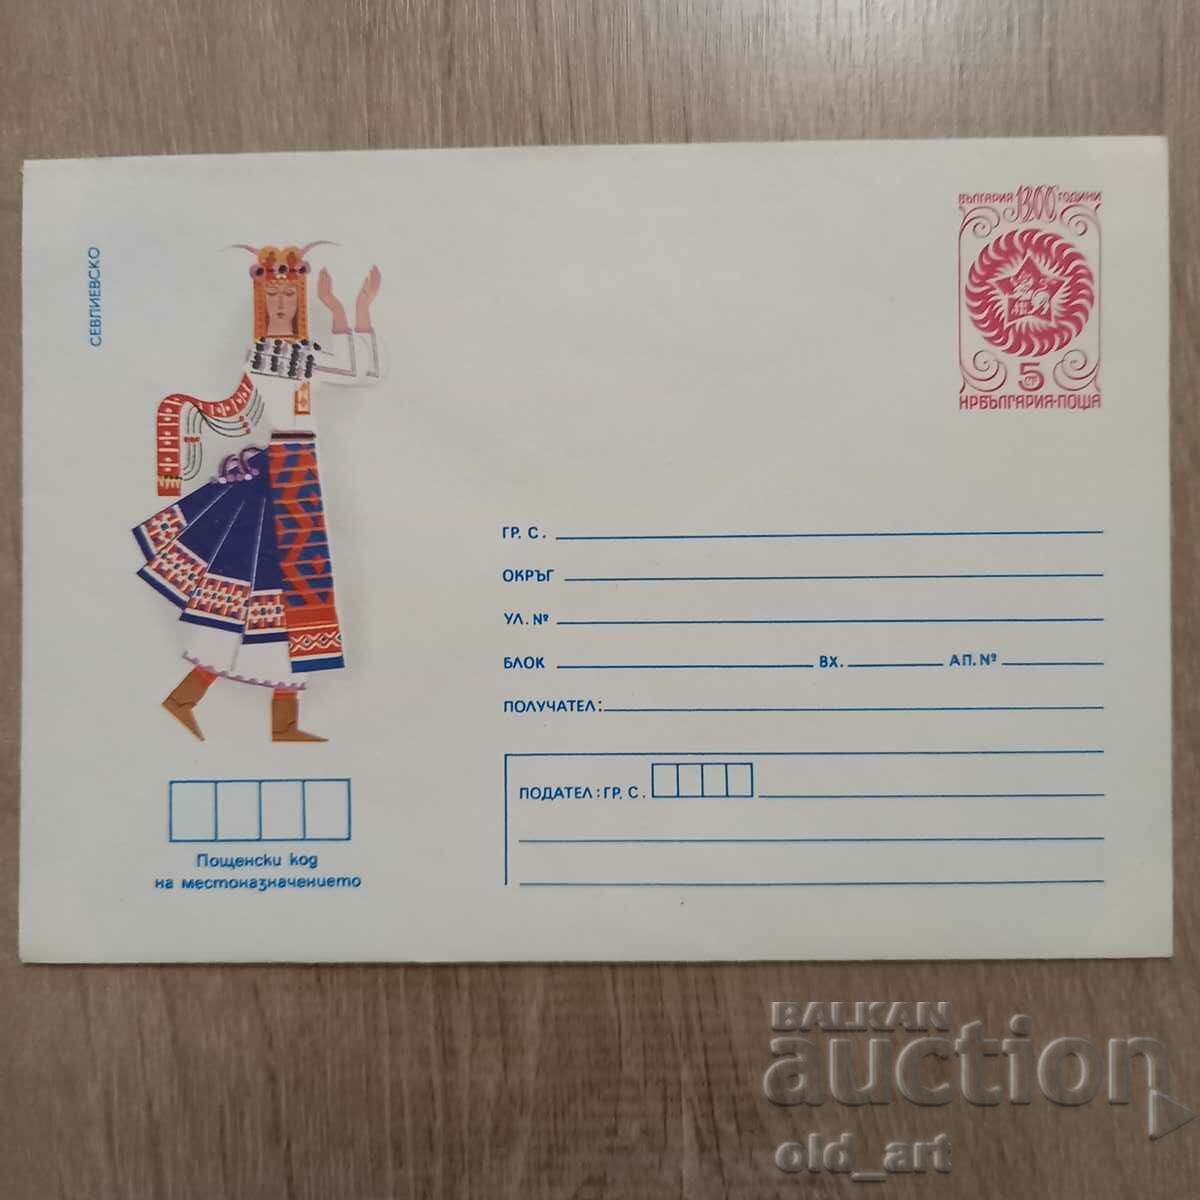 Ταχυδρομικός φάκελος - Λαϊκές φορεσιές - Sevlievsko